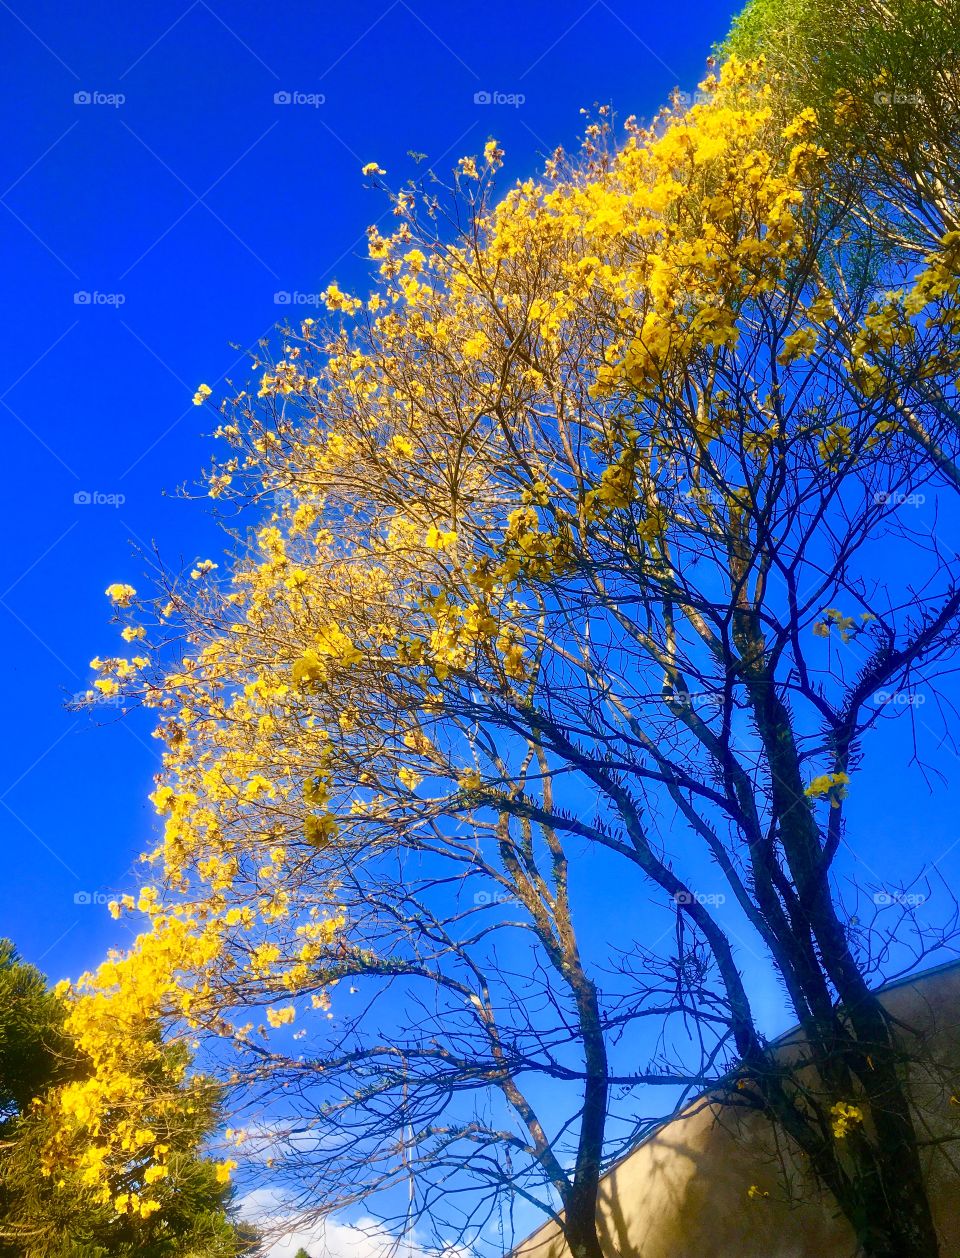 O incrível “rasgo no #céu” das flores do #ipê em seu infinito horizonte!
O #amarelo cortando o #azul e inspirando nossa manhã. Viva a natureza!
📸
#FOTOGRAFIAéNOSSOhobby